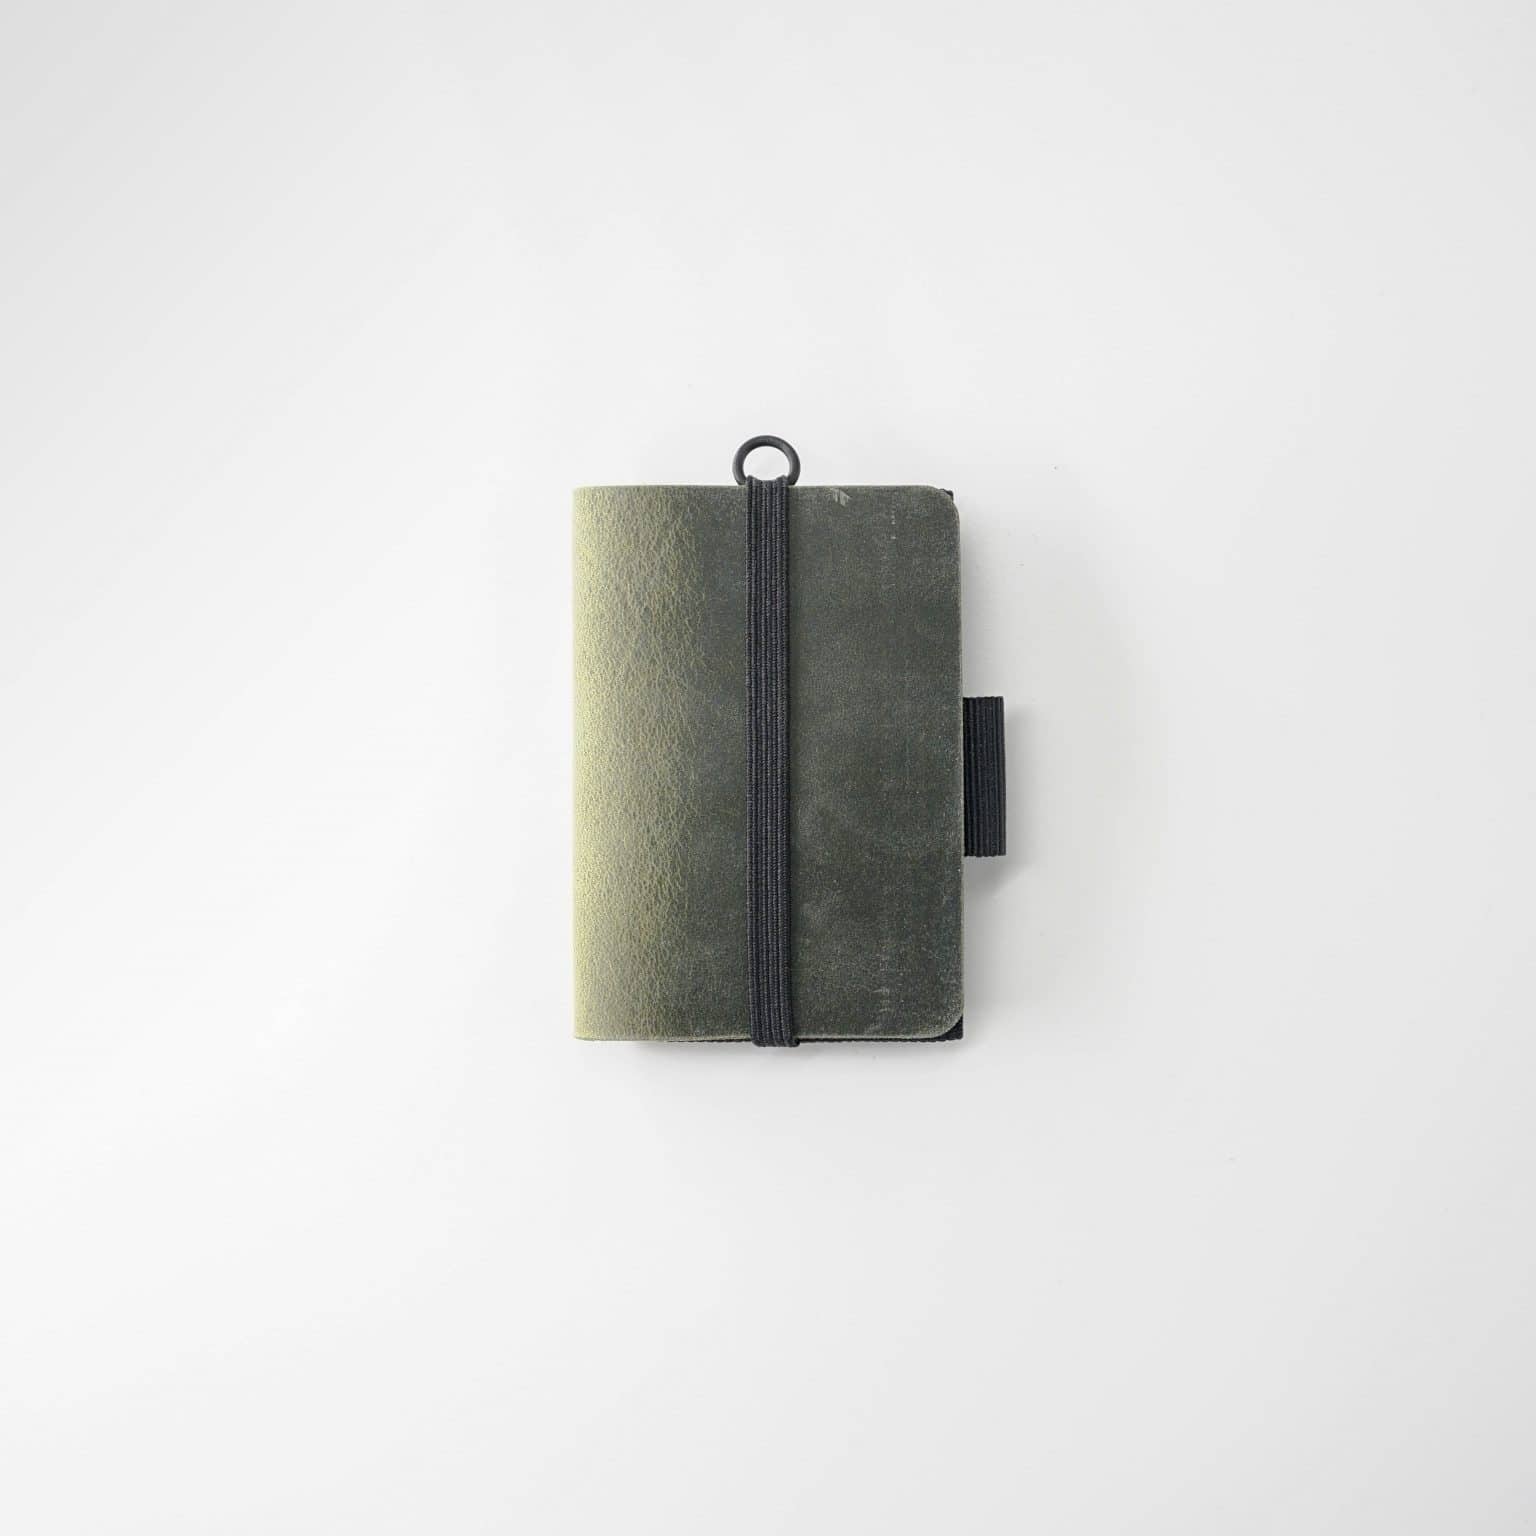 zeitgenössisch minimalist Geldbörse mit geometrischem Design.